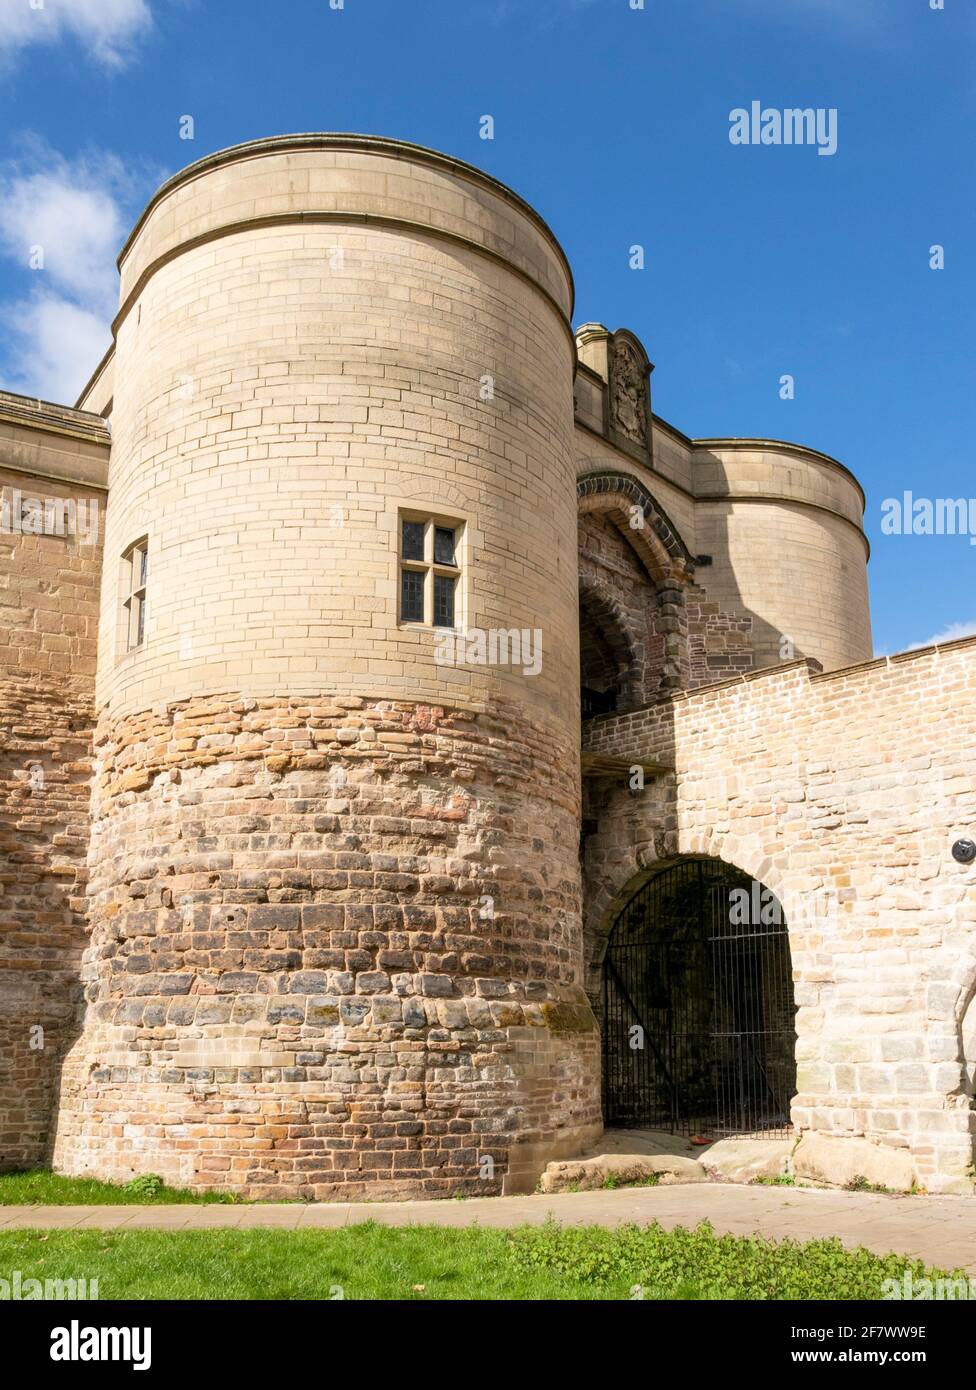 Château de Nottingham, porte d'entrée extérieure, pont et murs souterrains Nottingham Notinghamshire east midlands Angleterre Royaume-Uni GB Europe Banque D'Images